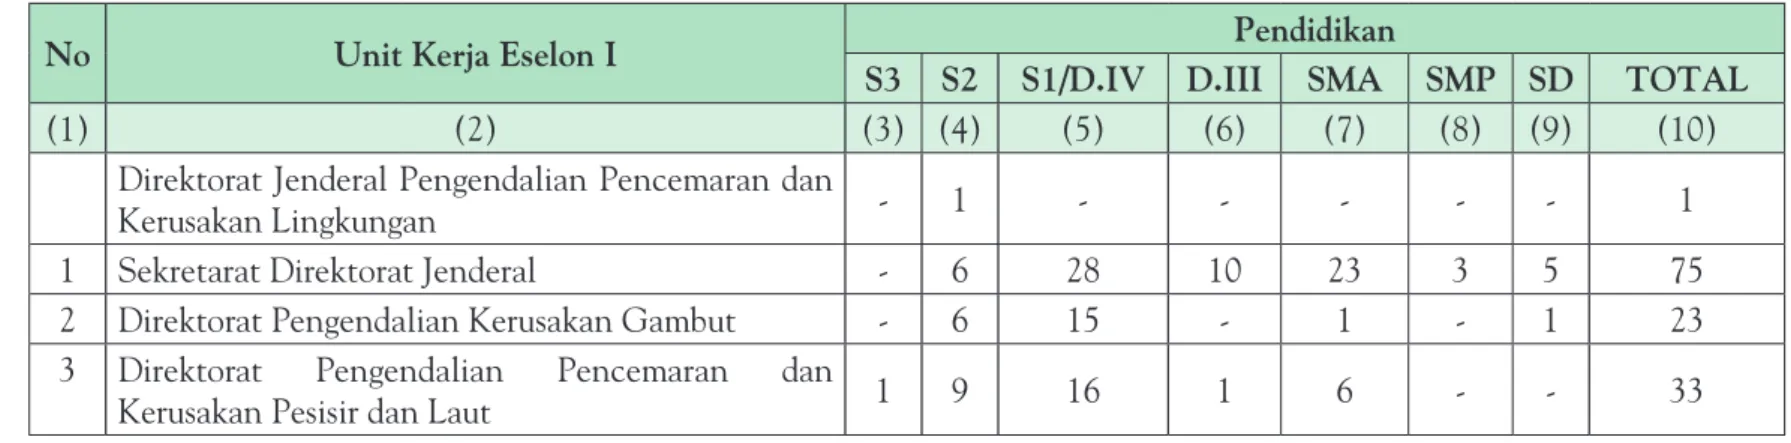 Tabel 6. Komposisi SDM Direktorat Jenderal Pengendalian Pencemaran dan Kerusakan Lingkungan